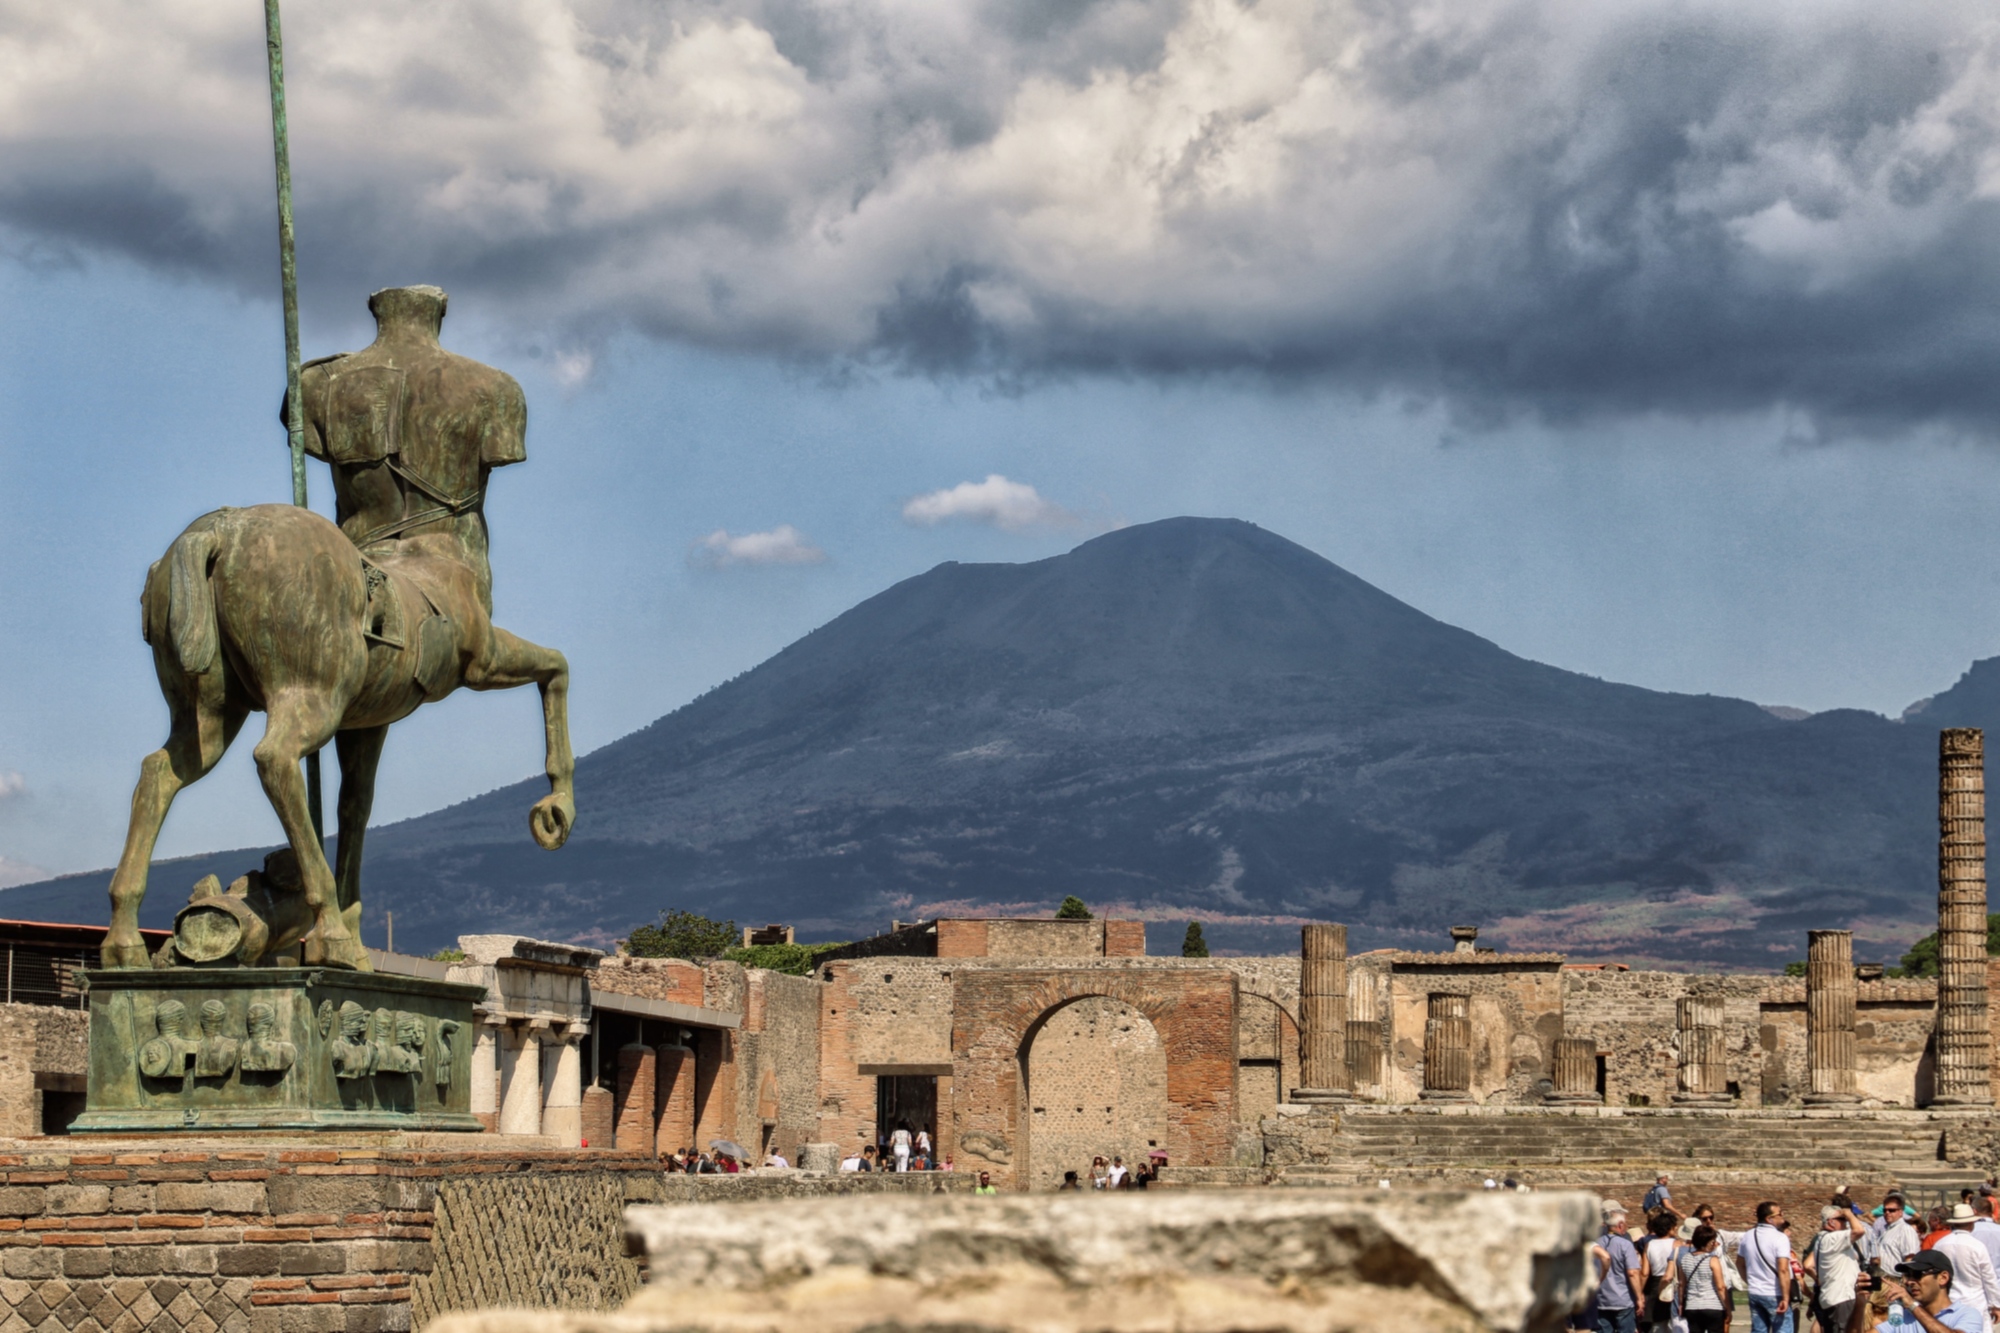 Accordo quadro tra università Federico II e Parco archeologico di Pompei